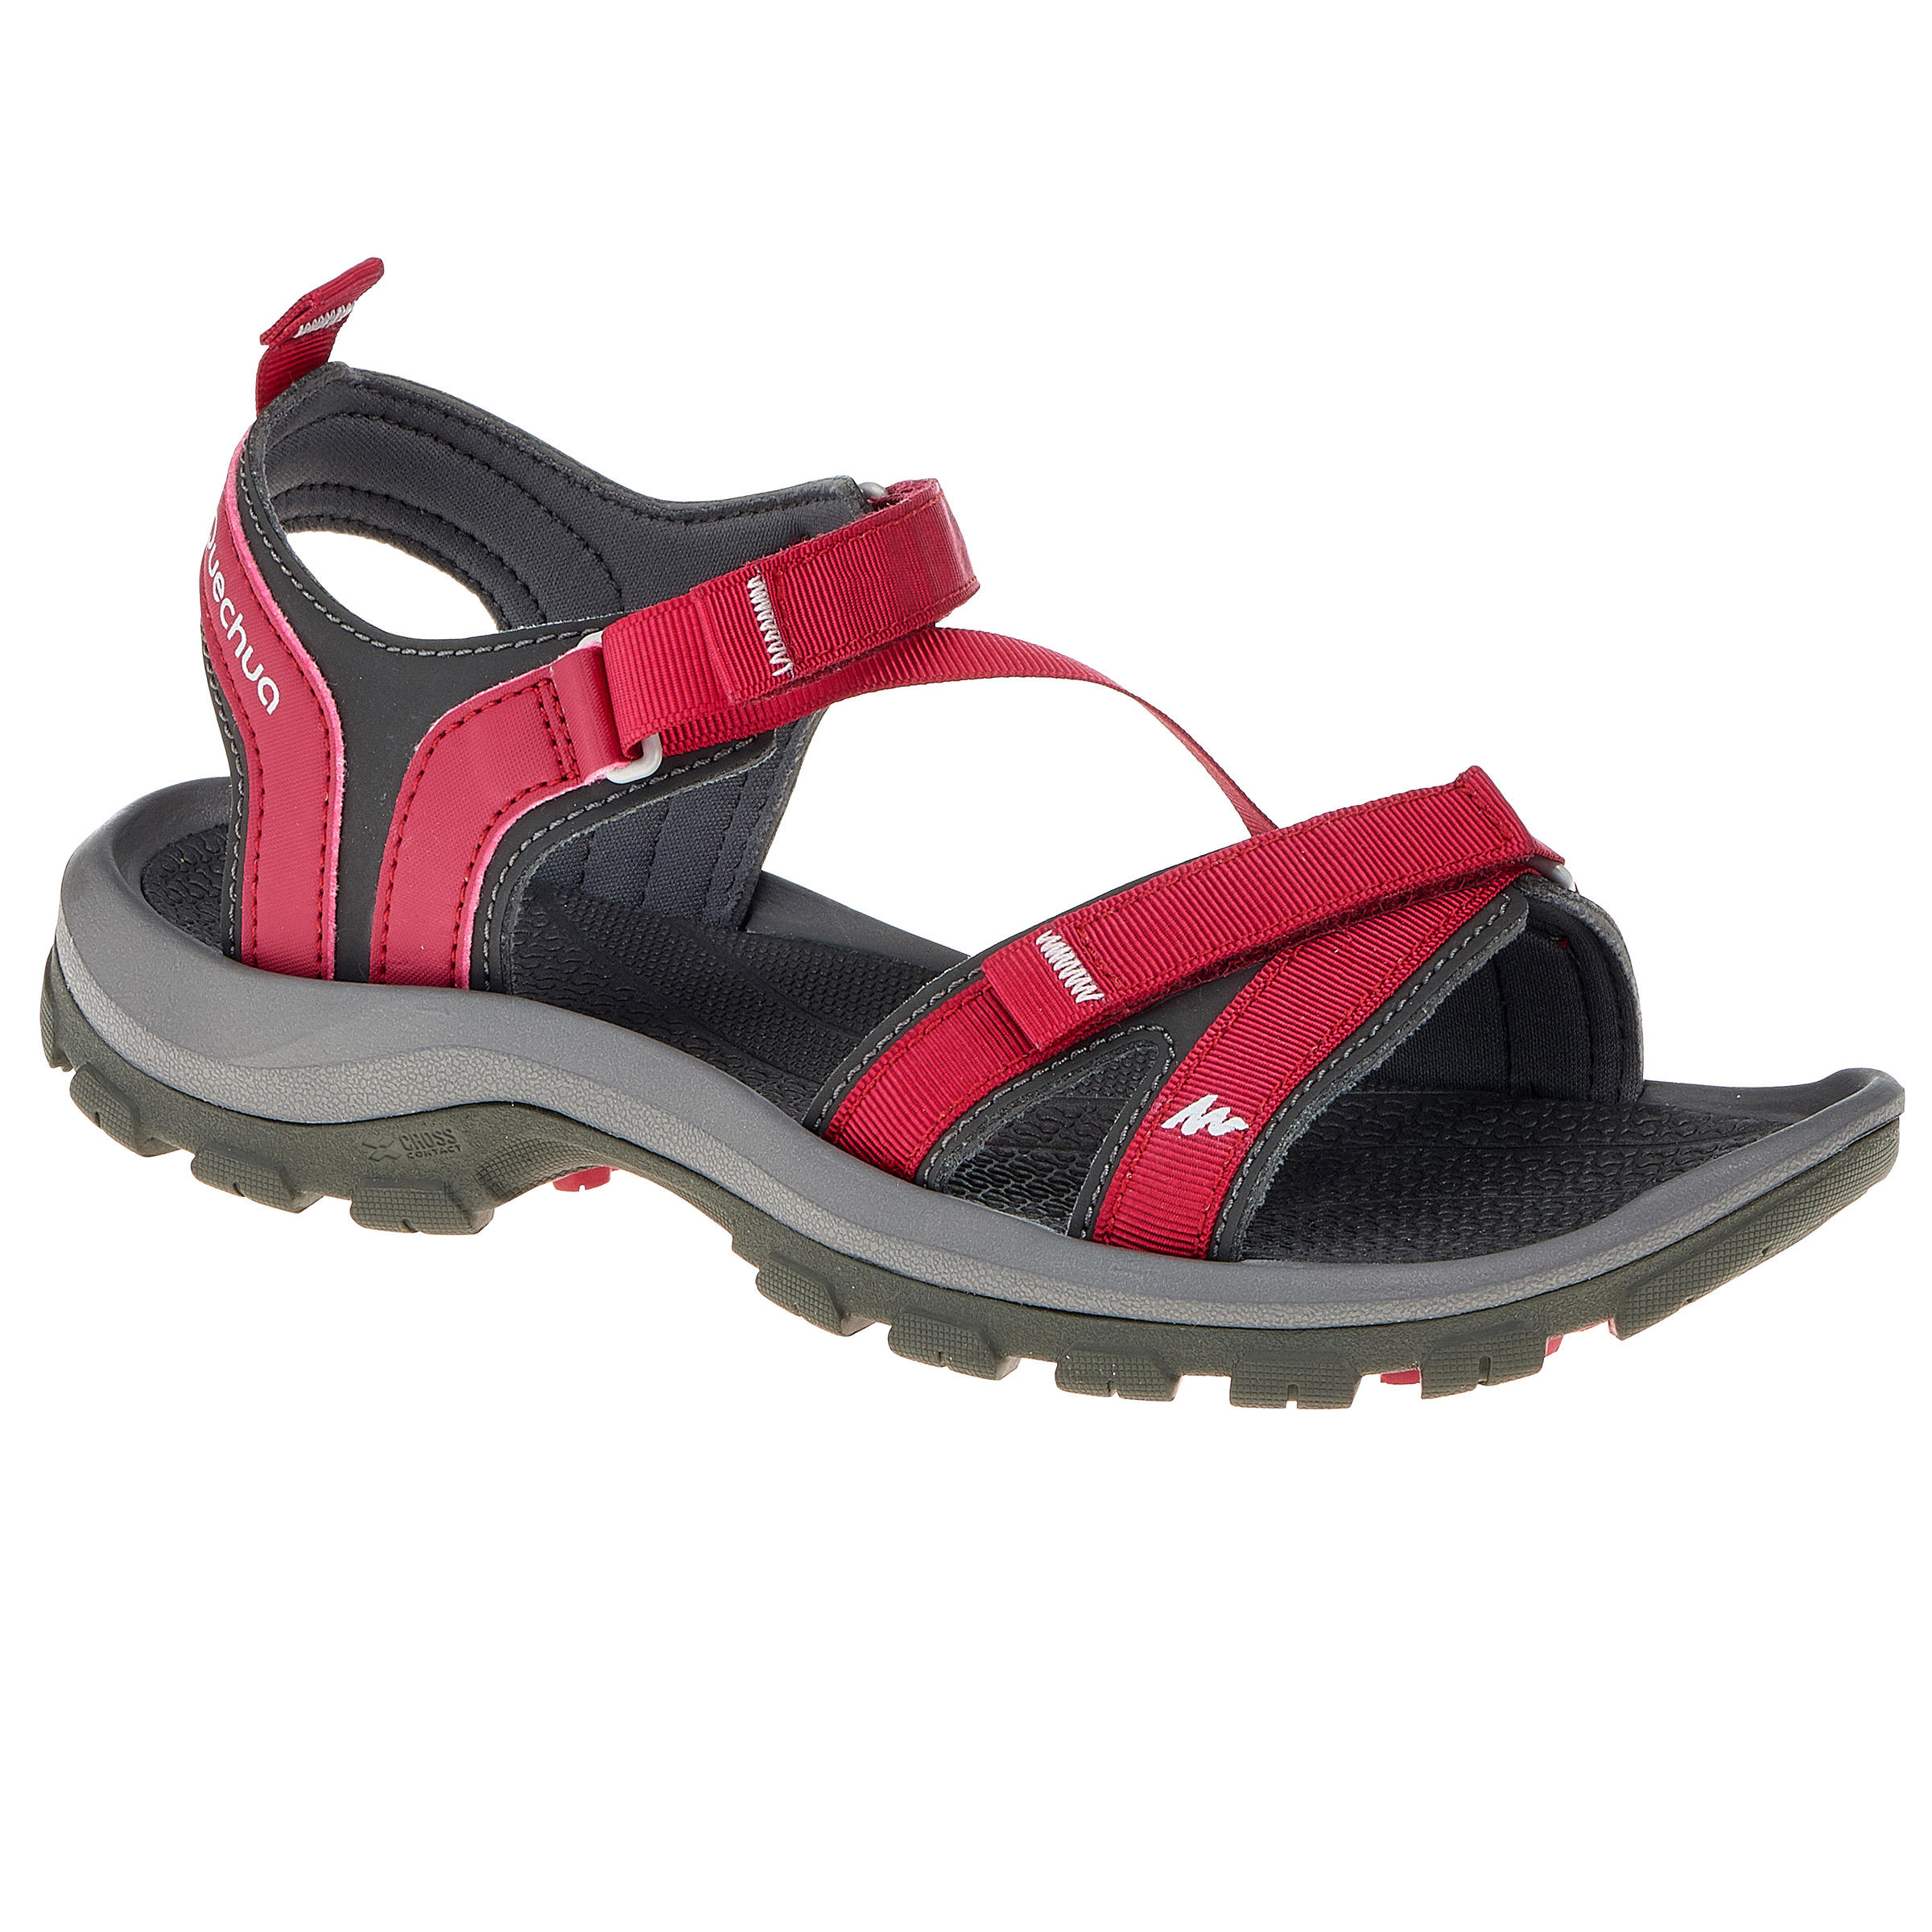 decathlon sandals for ladies